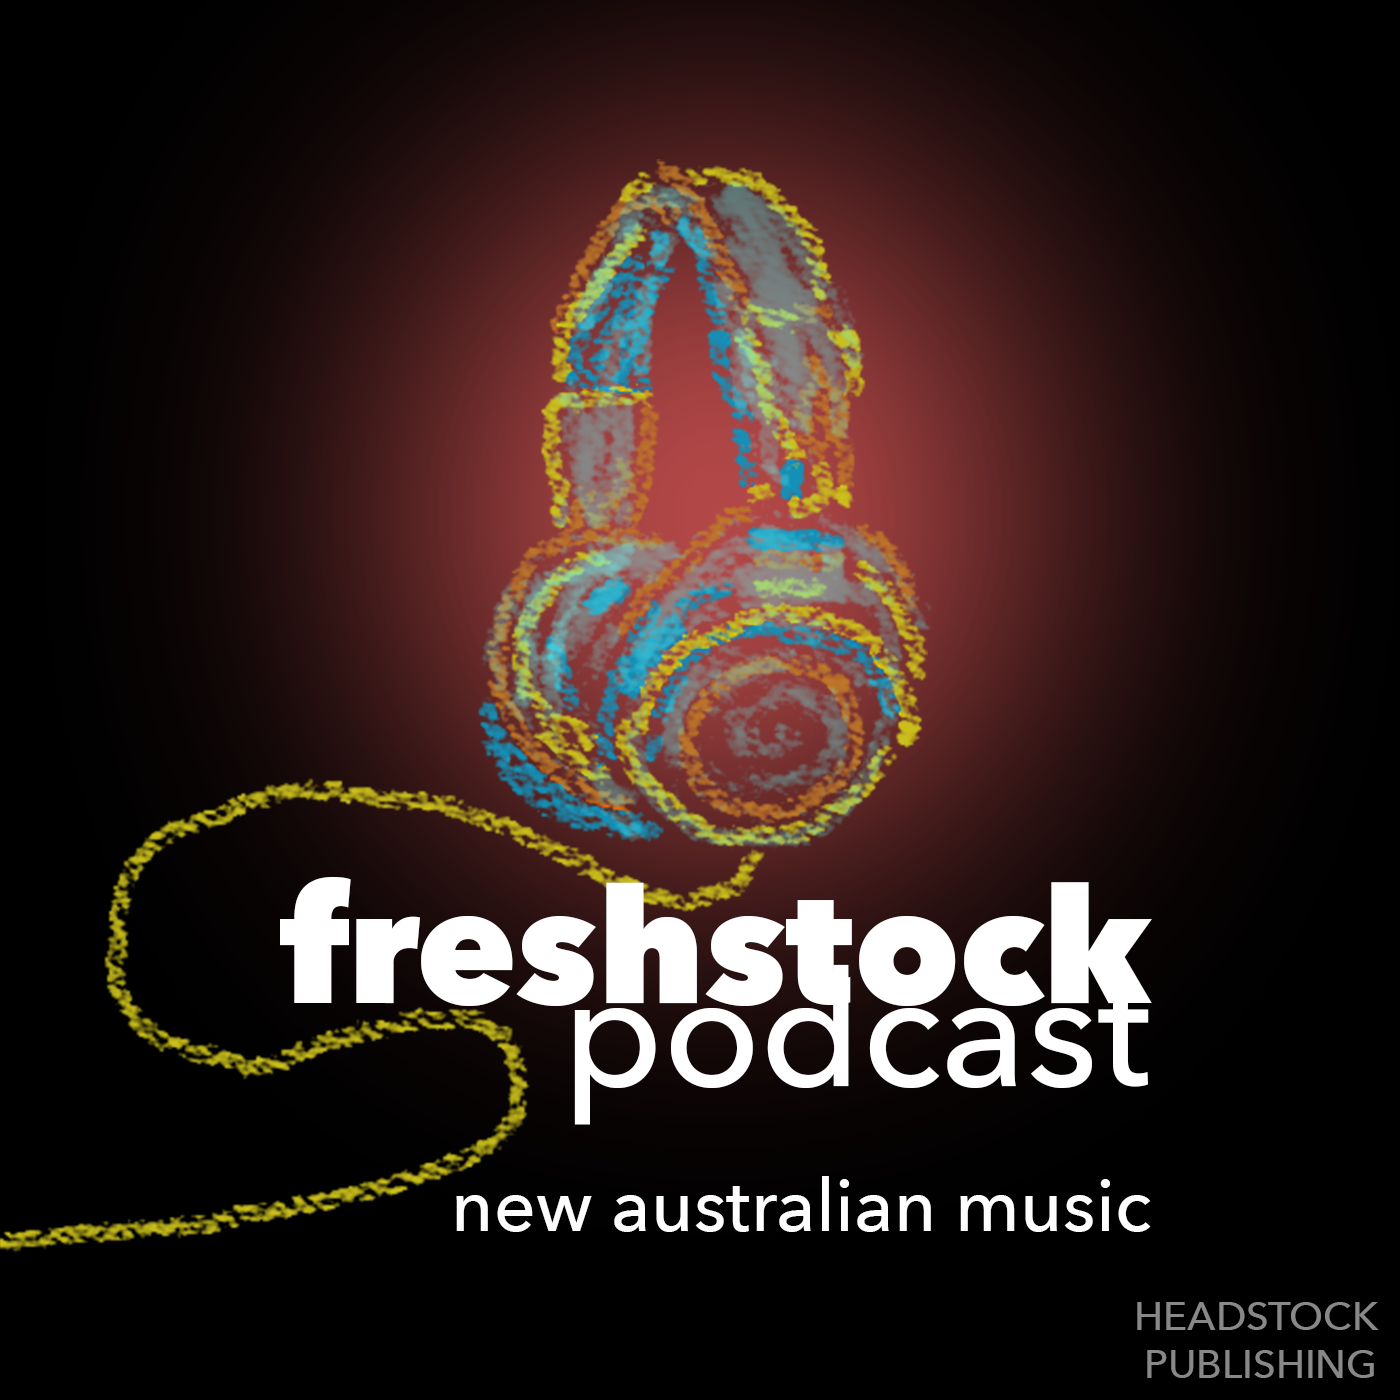 Freshstock Podcast